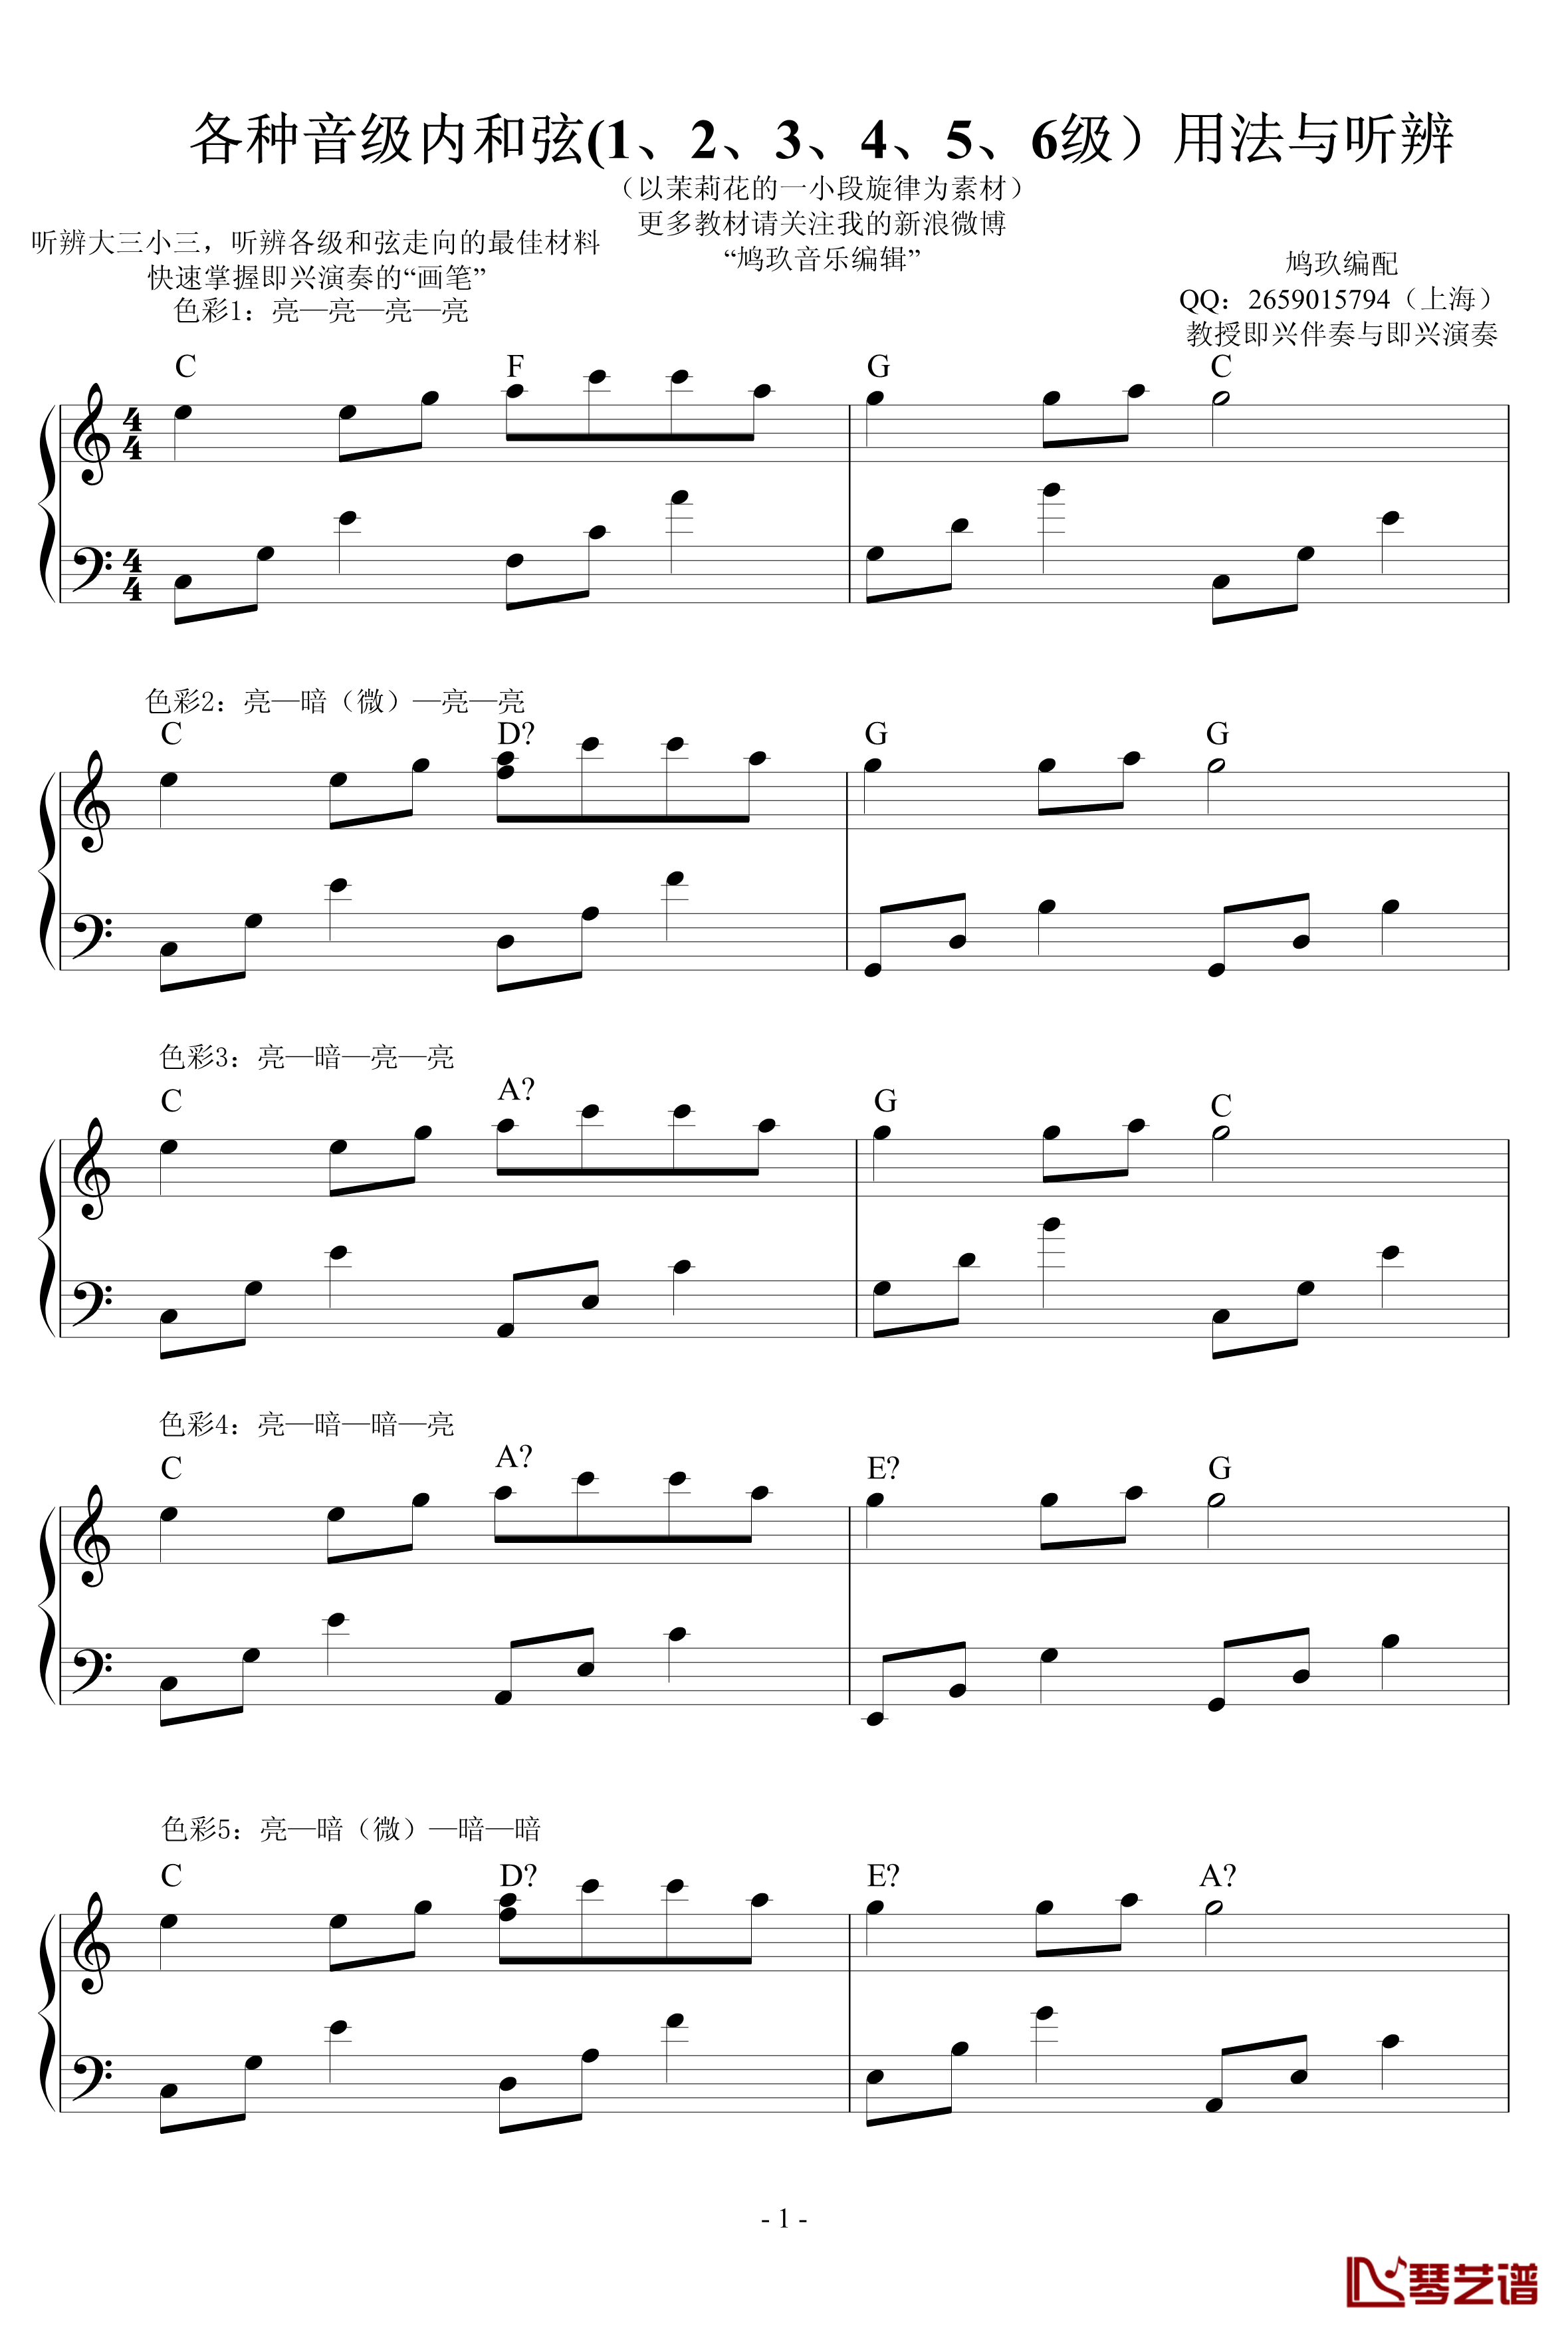 超实用即兴伴奏教材1钢琴谱-常用和弦-鸠玖1